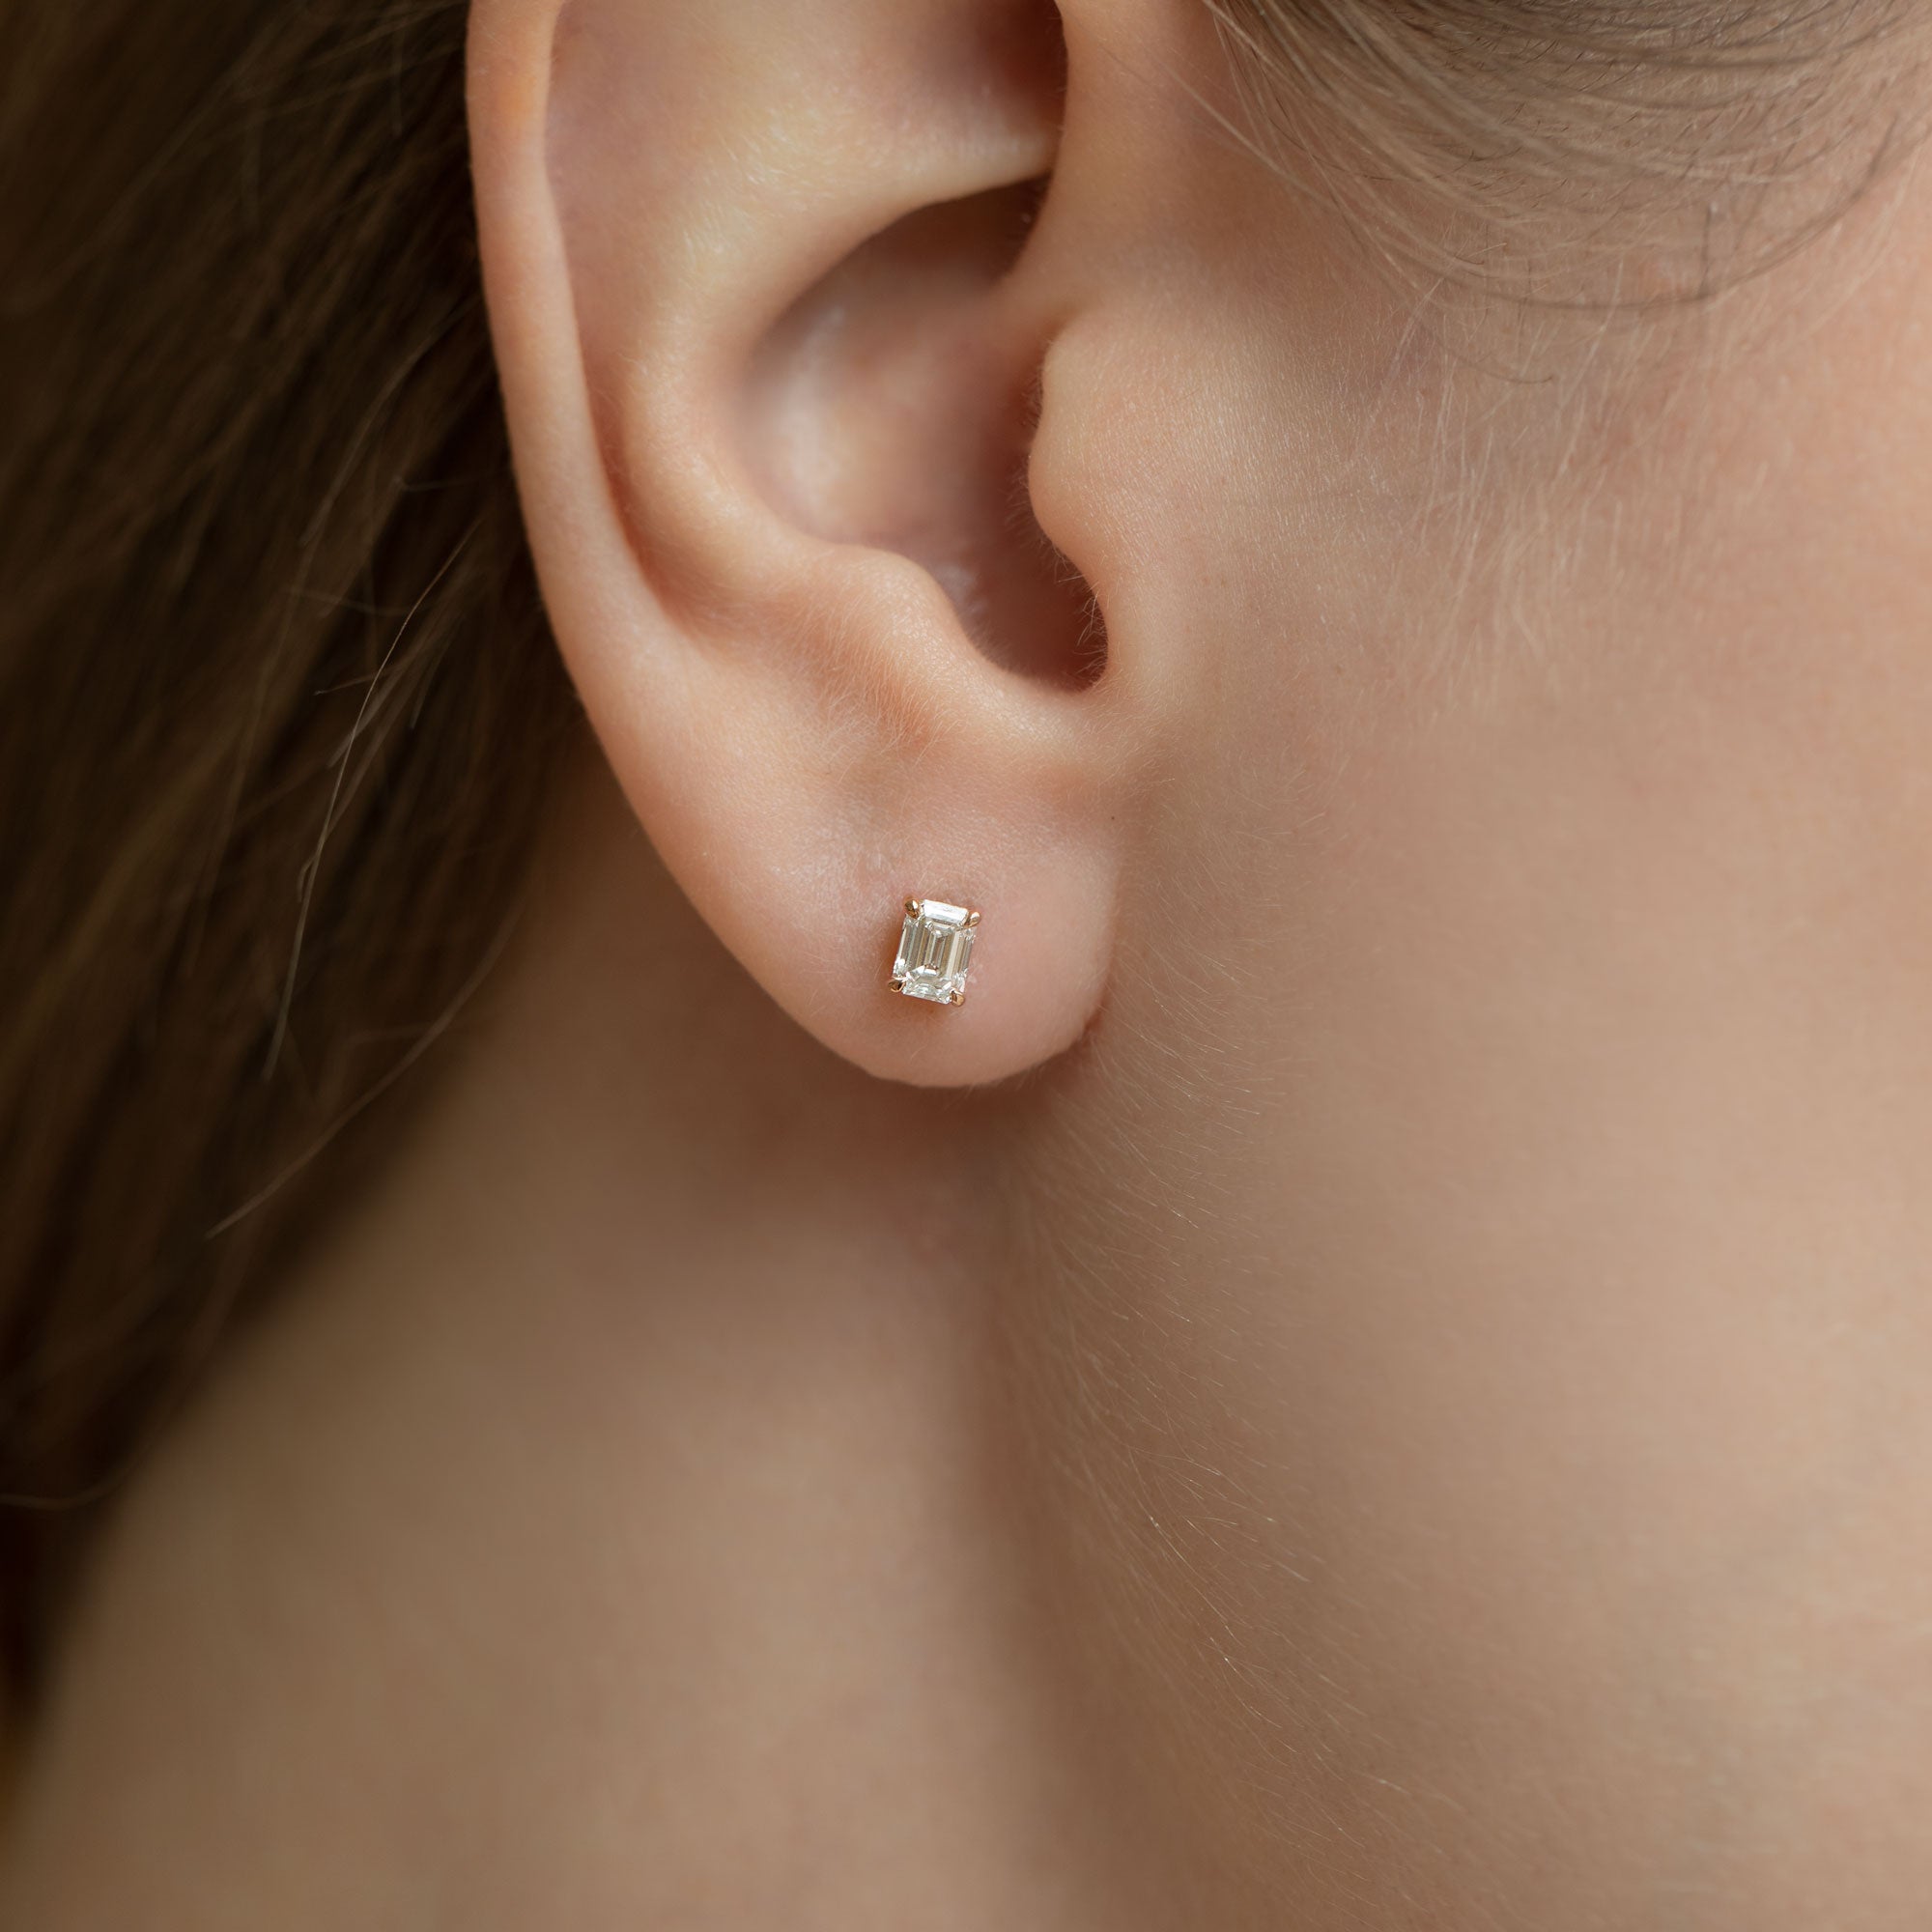 Soli Emerald earrings